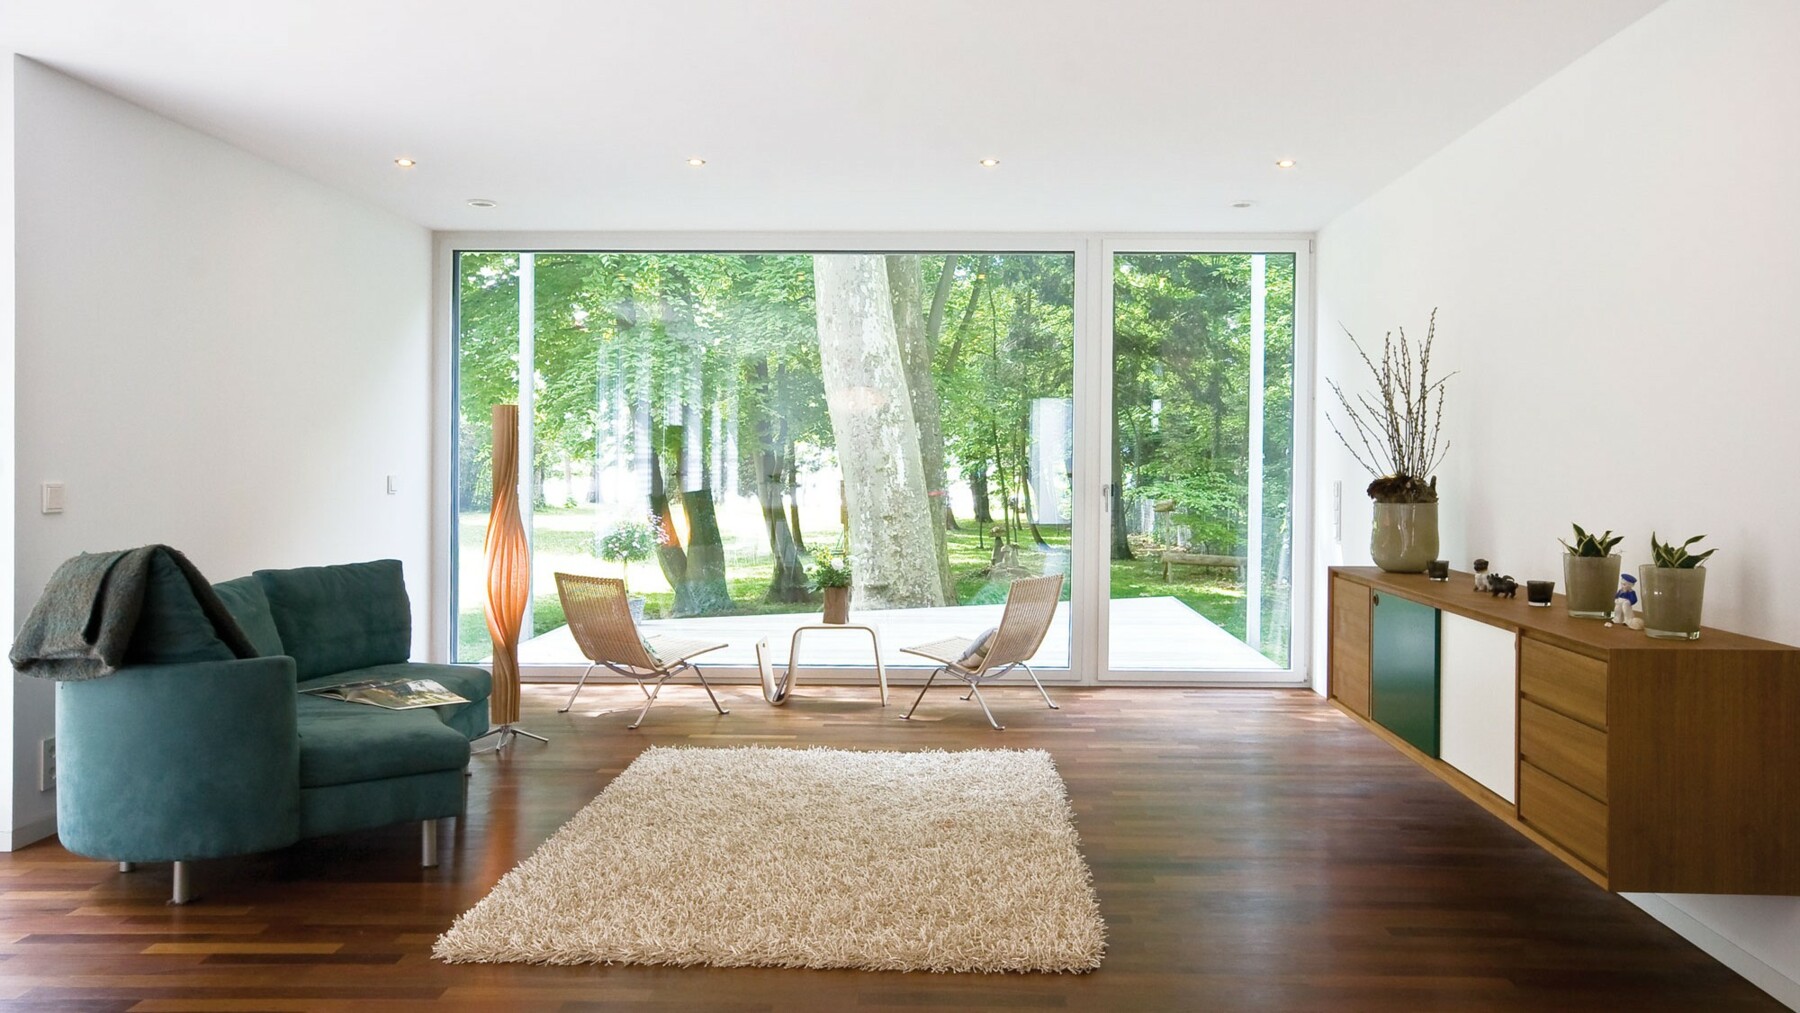 Die verwendeten Bauteile made of LIGNO® aus Holz mit weißer Gipsverkleidung, sorgen in diesem Passivhaus für wohngesundes, nachhaltiges Wohnen. 